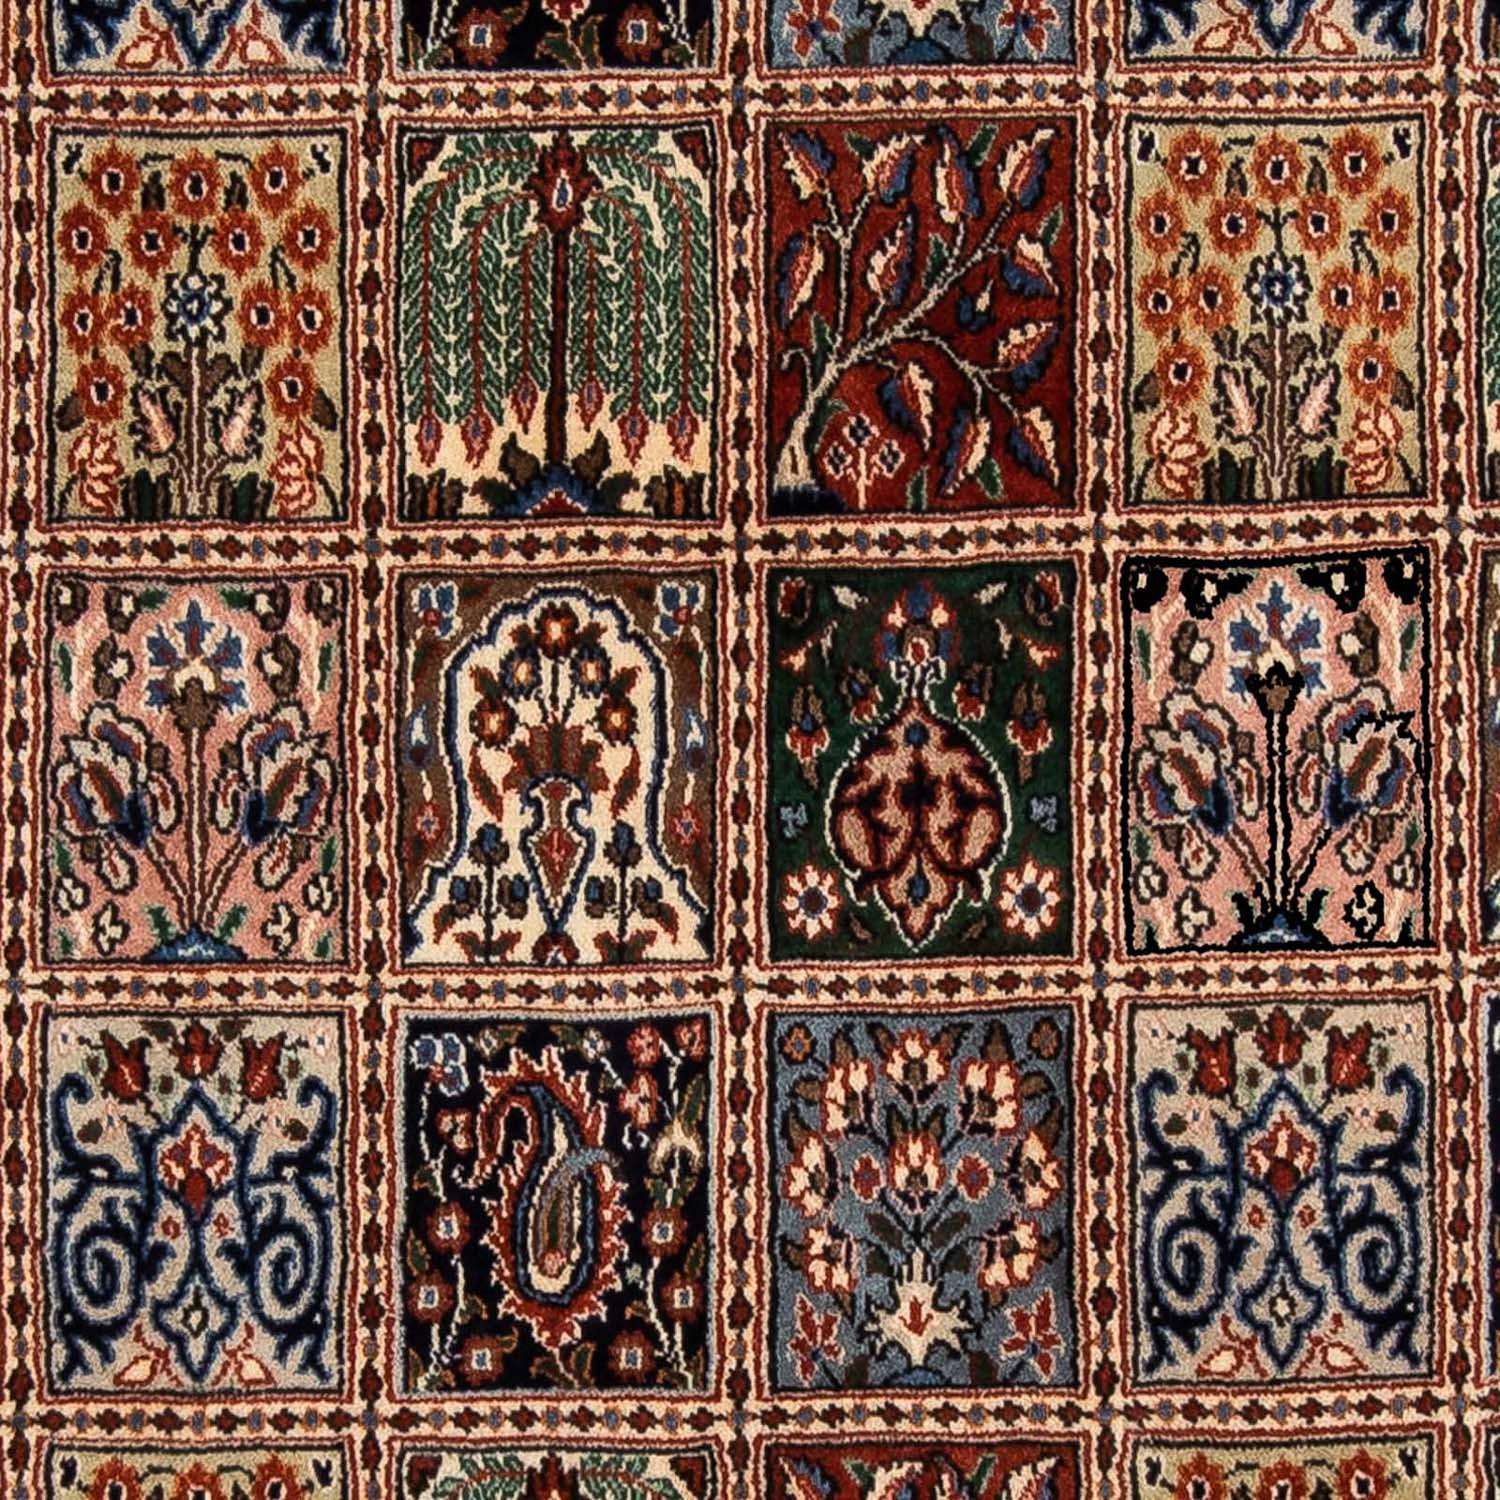 Tapis persan - Classique - 291 x 197 cm - multicolore